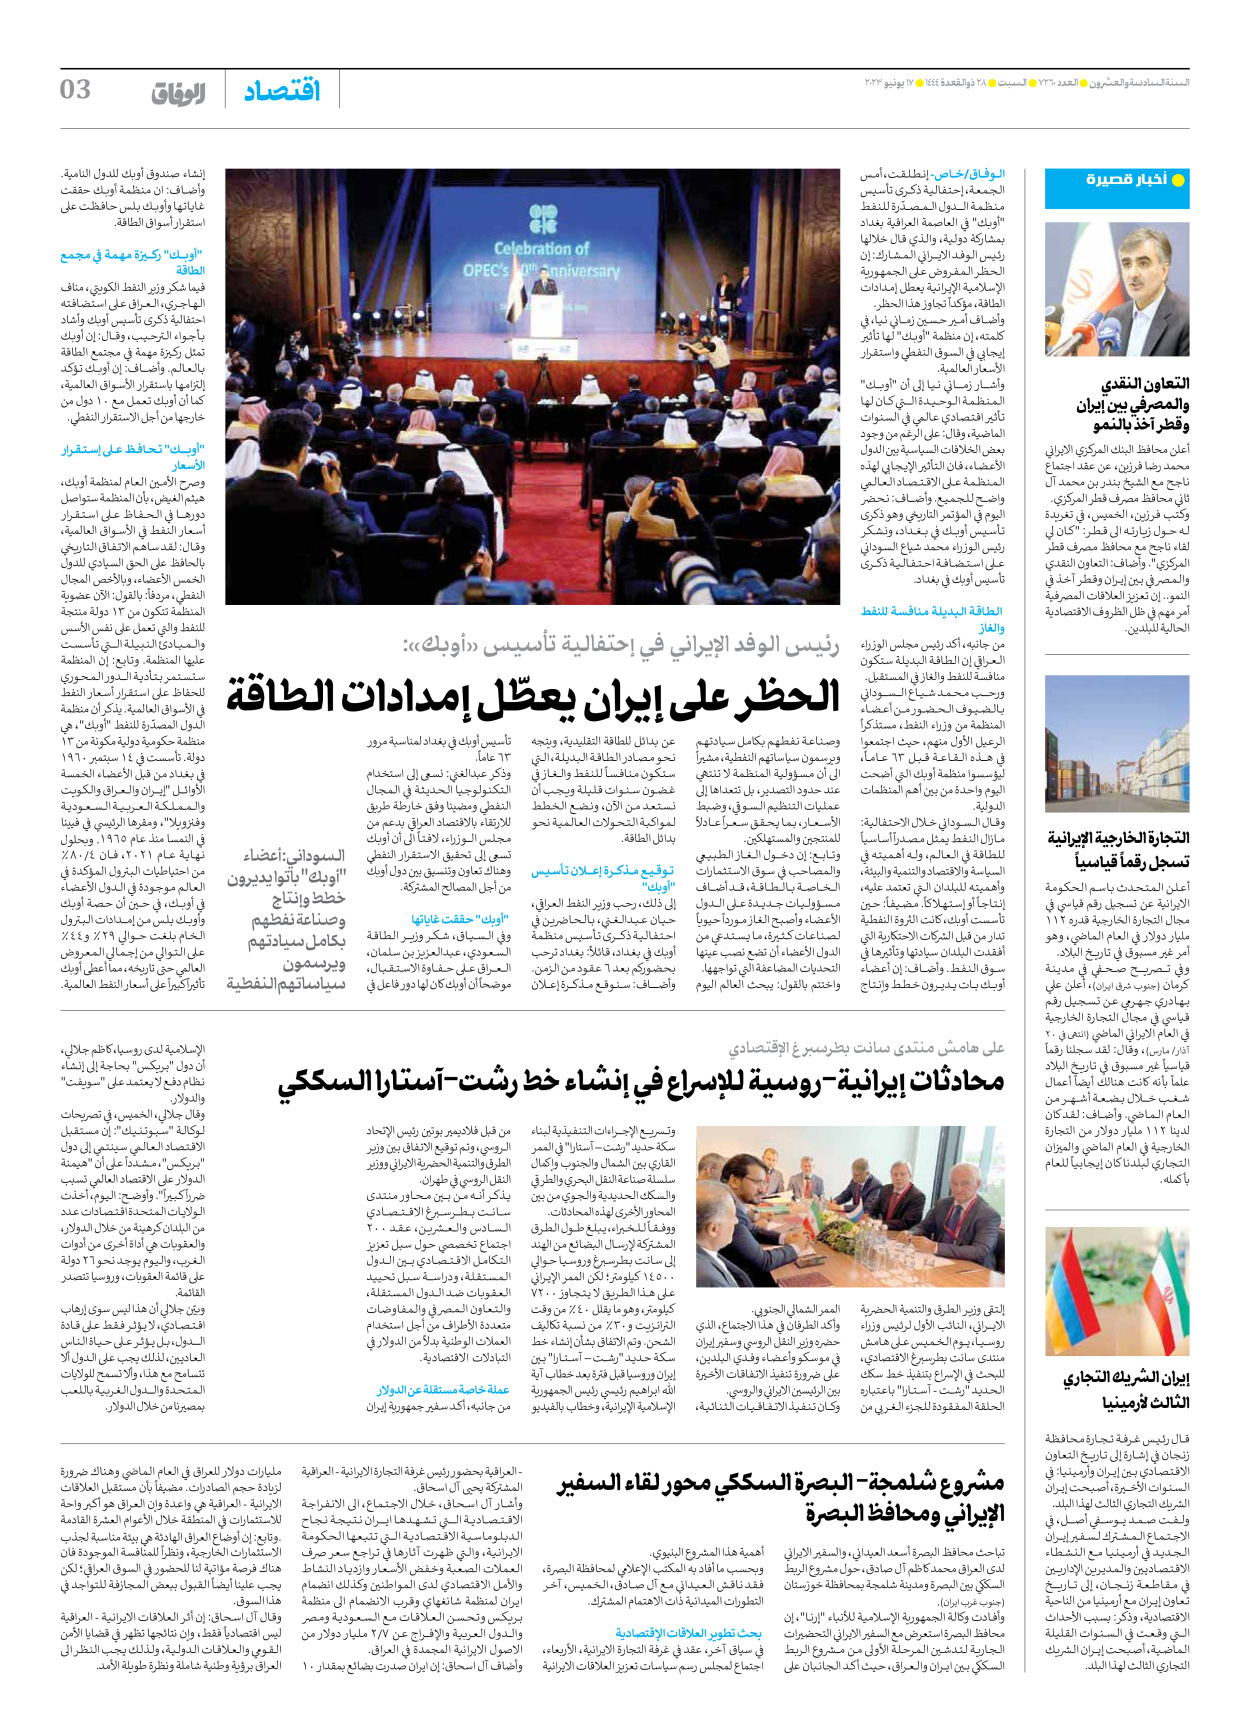 صحیفة ایران الدولیة الوفاق - العدد سبعة آلاف ومائتان وستون - ١٦ يونيو ٢٠٢٣ - الصفحة ۳